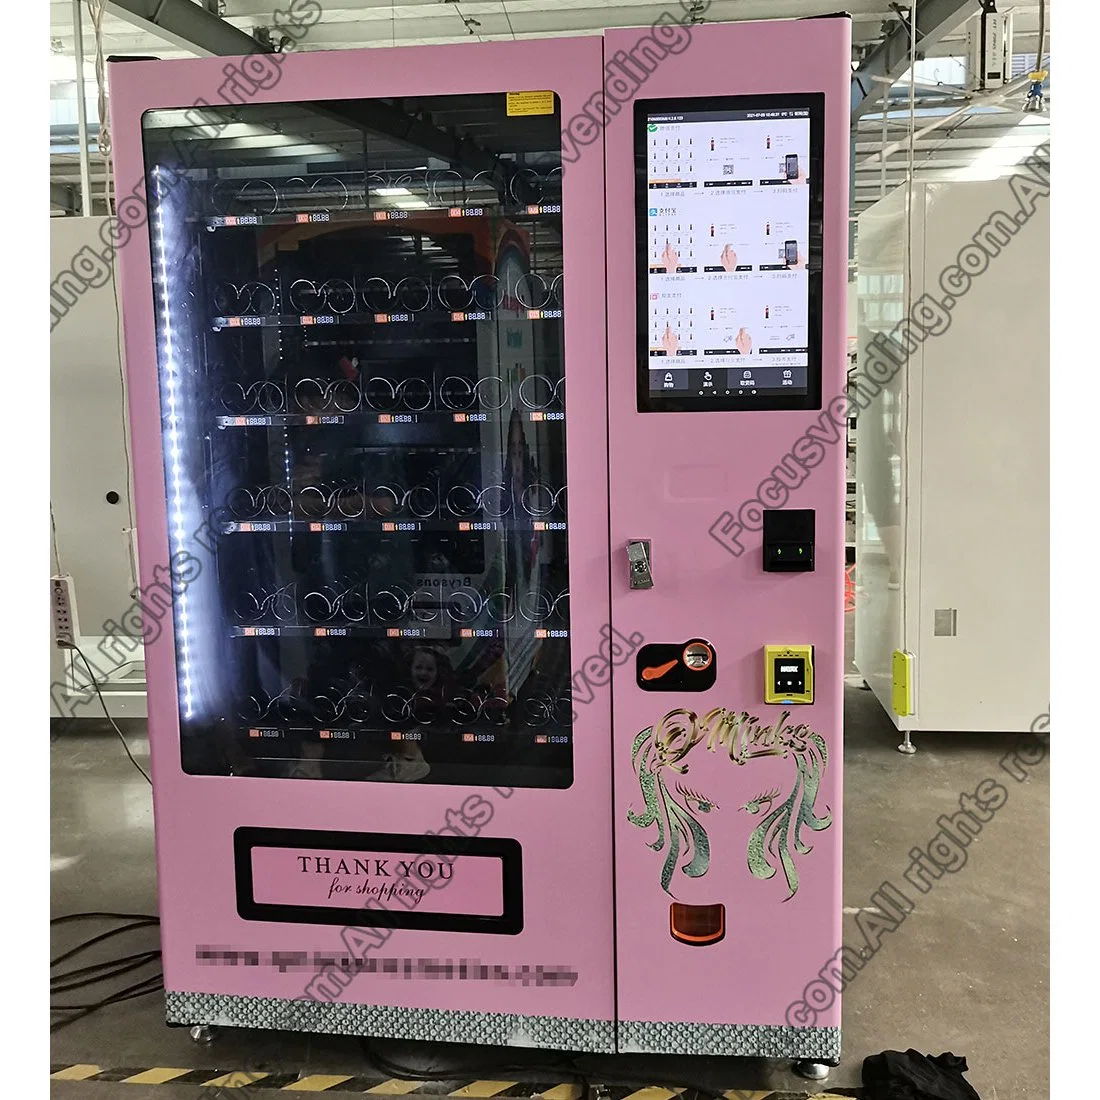 Cabelos personalizadas Perucas máquinas de venda automática com monitor de ecrã táctil